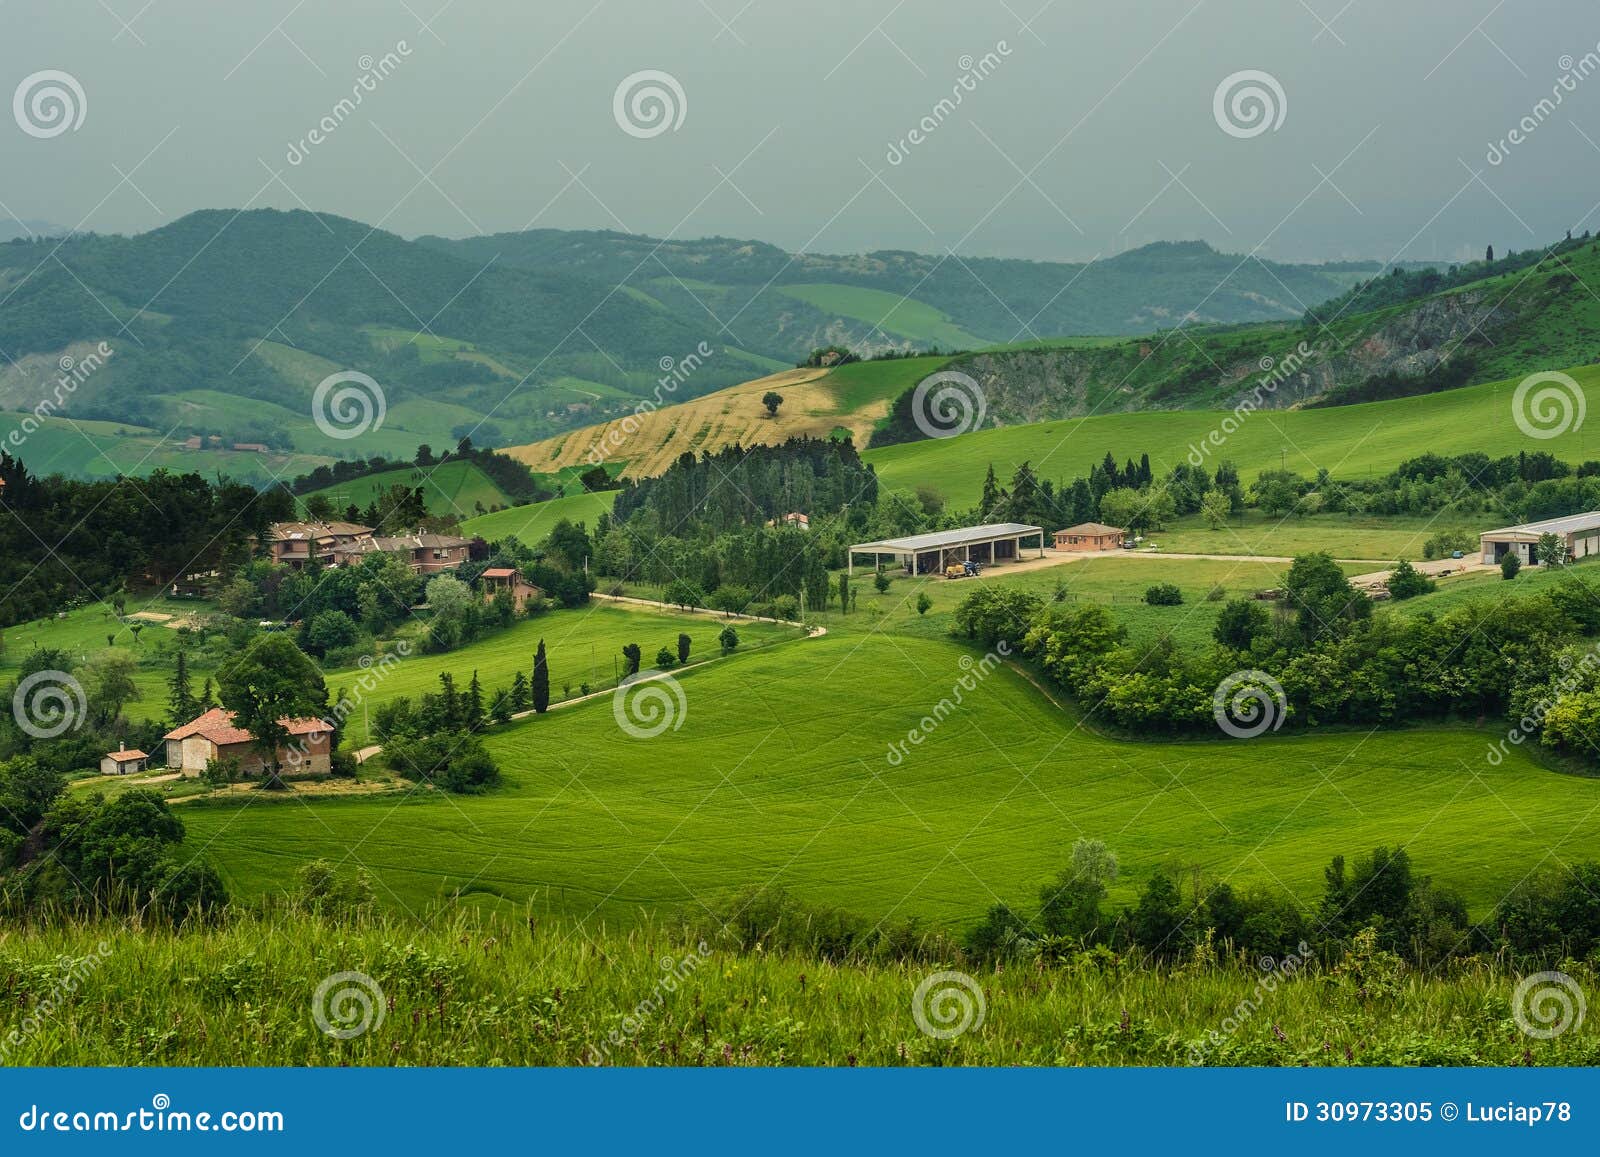 emilia romagna hills